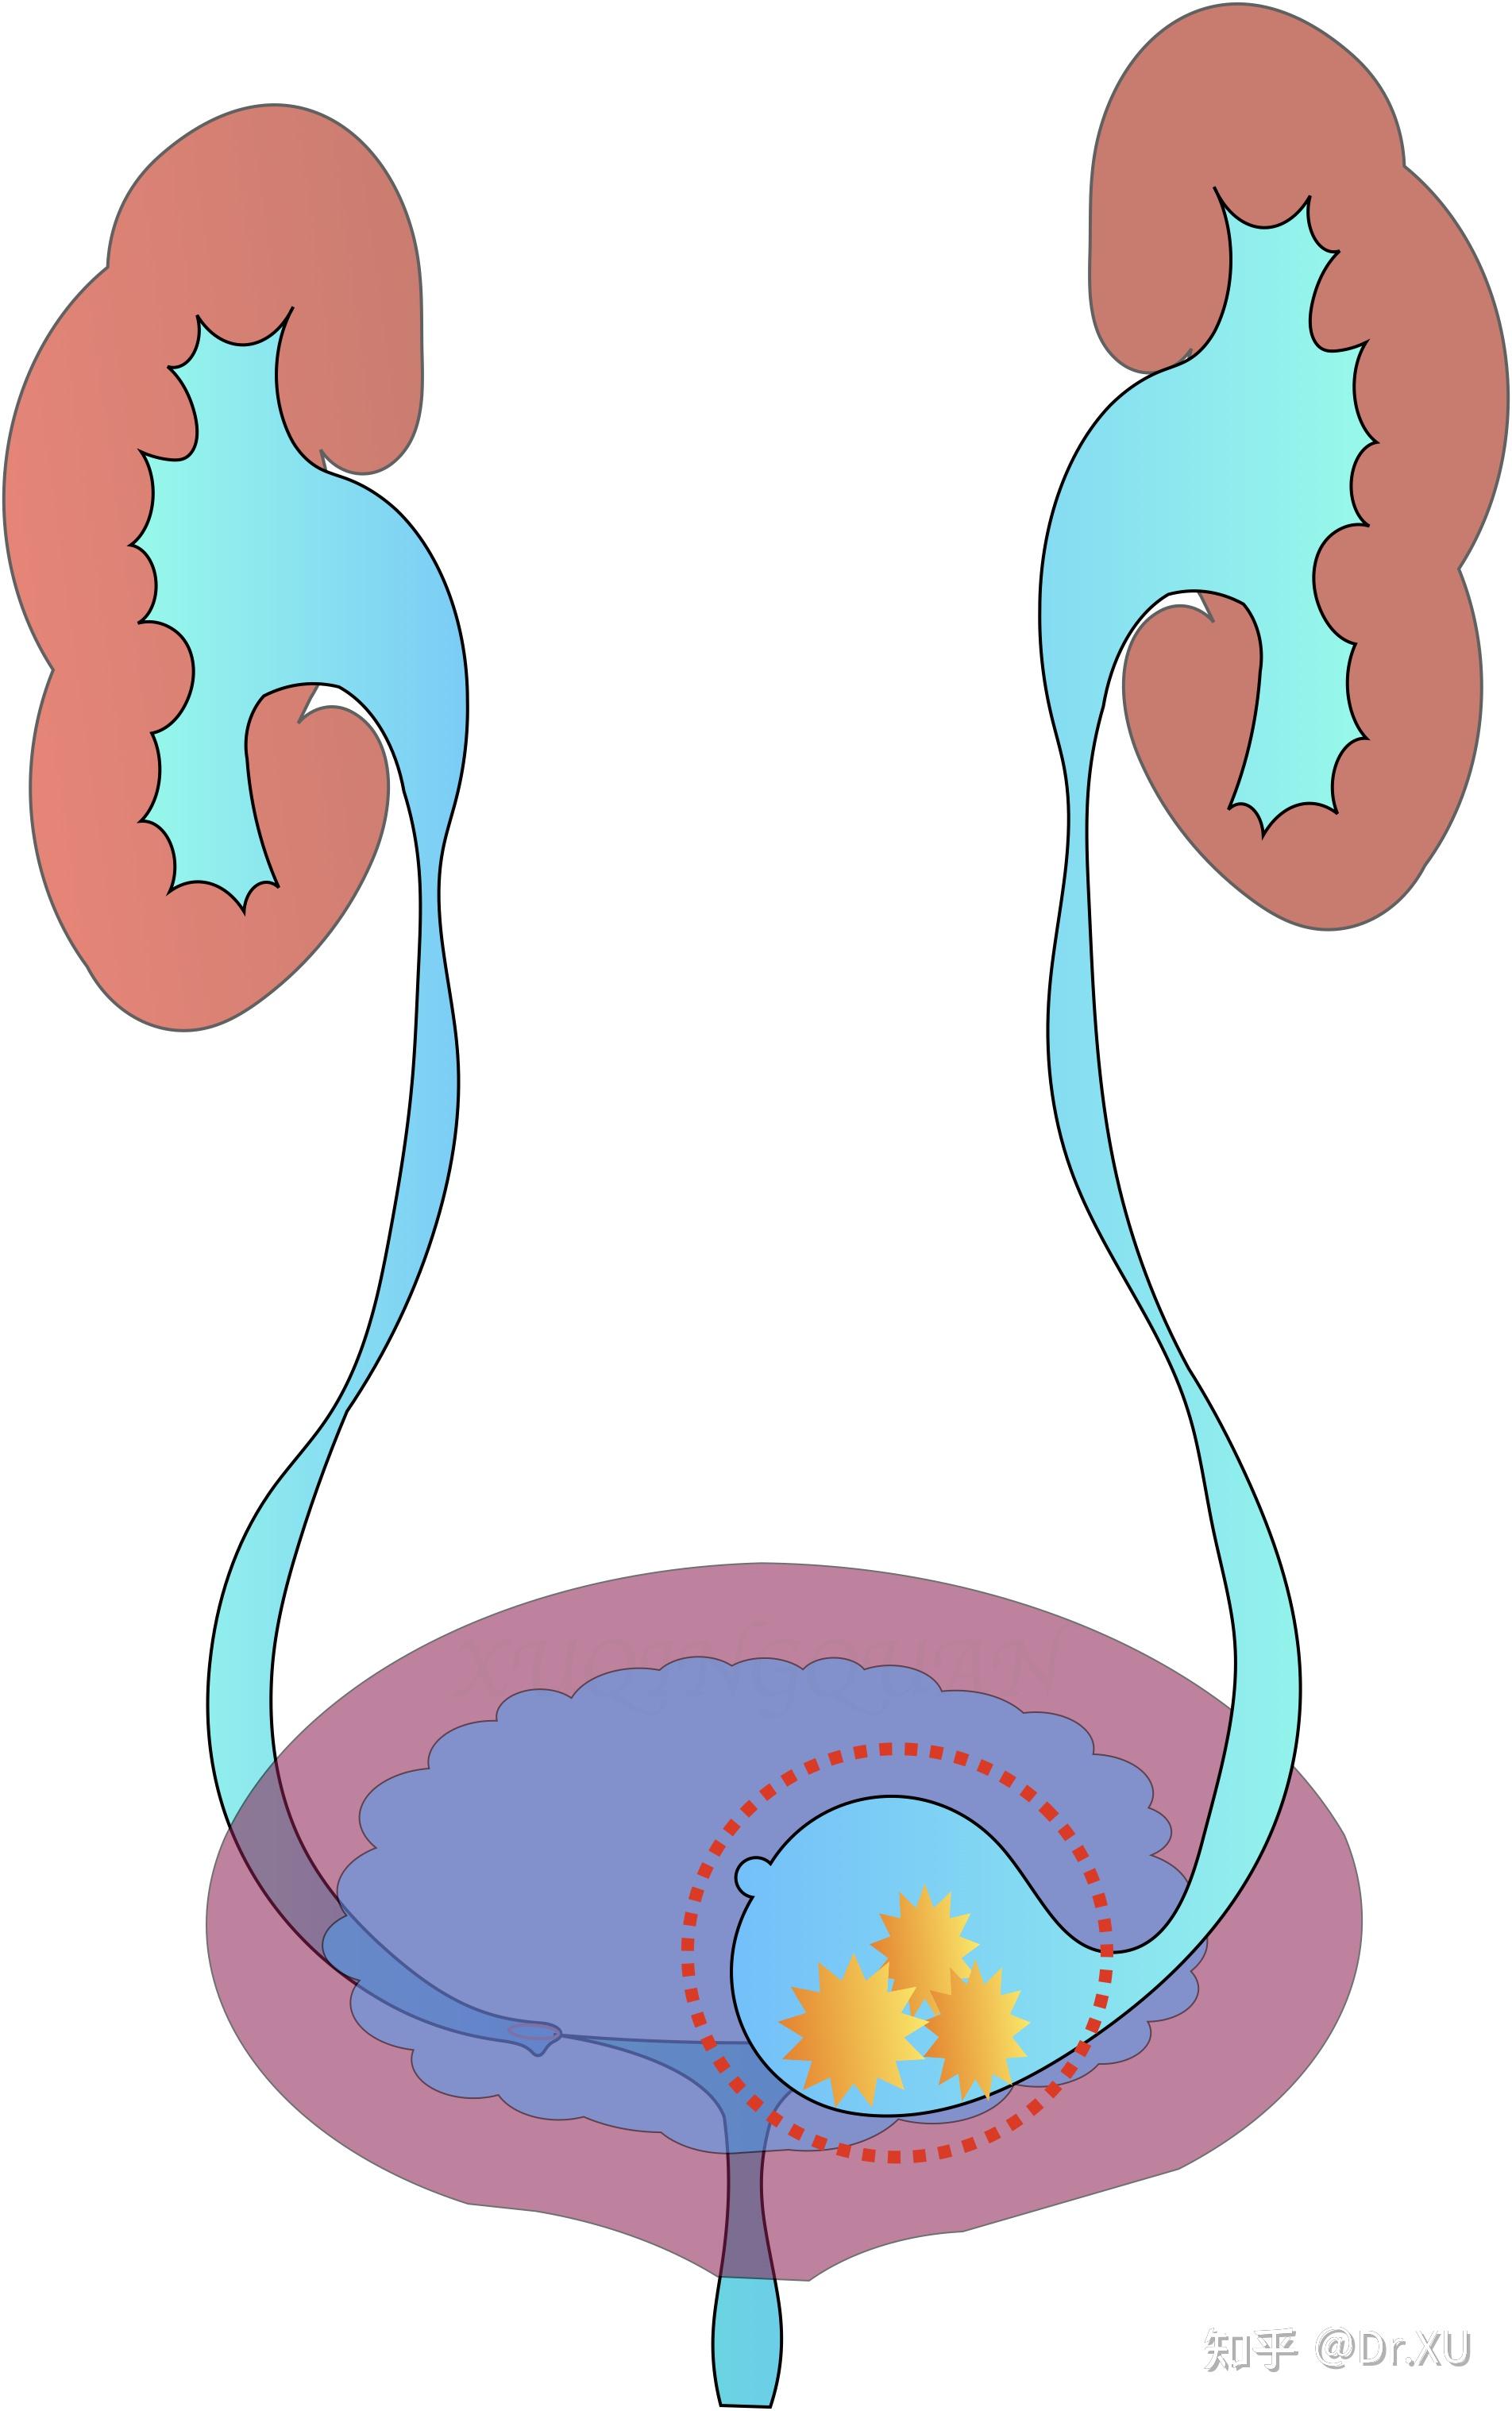 图2-3-2 肾盂和输尿管经静脉排泄尿路造影-基础医学-医学